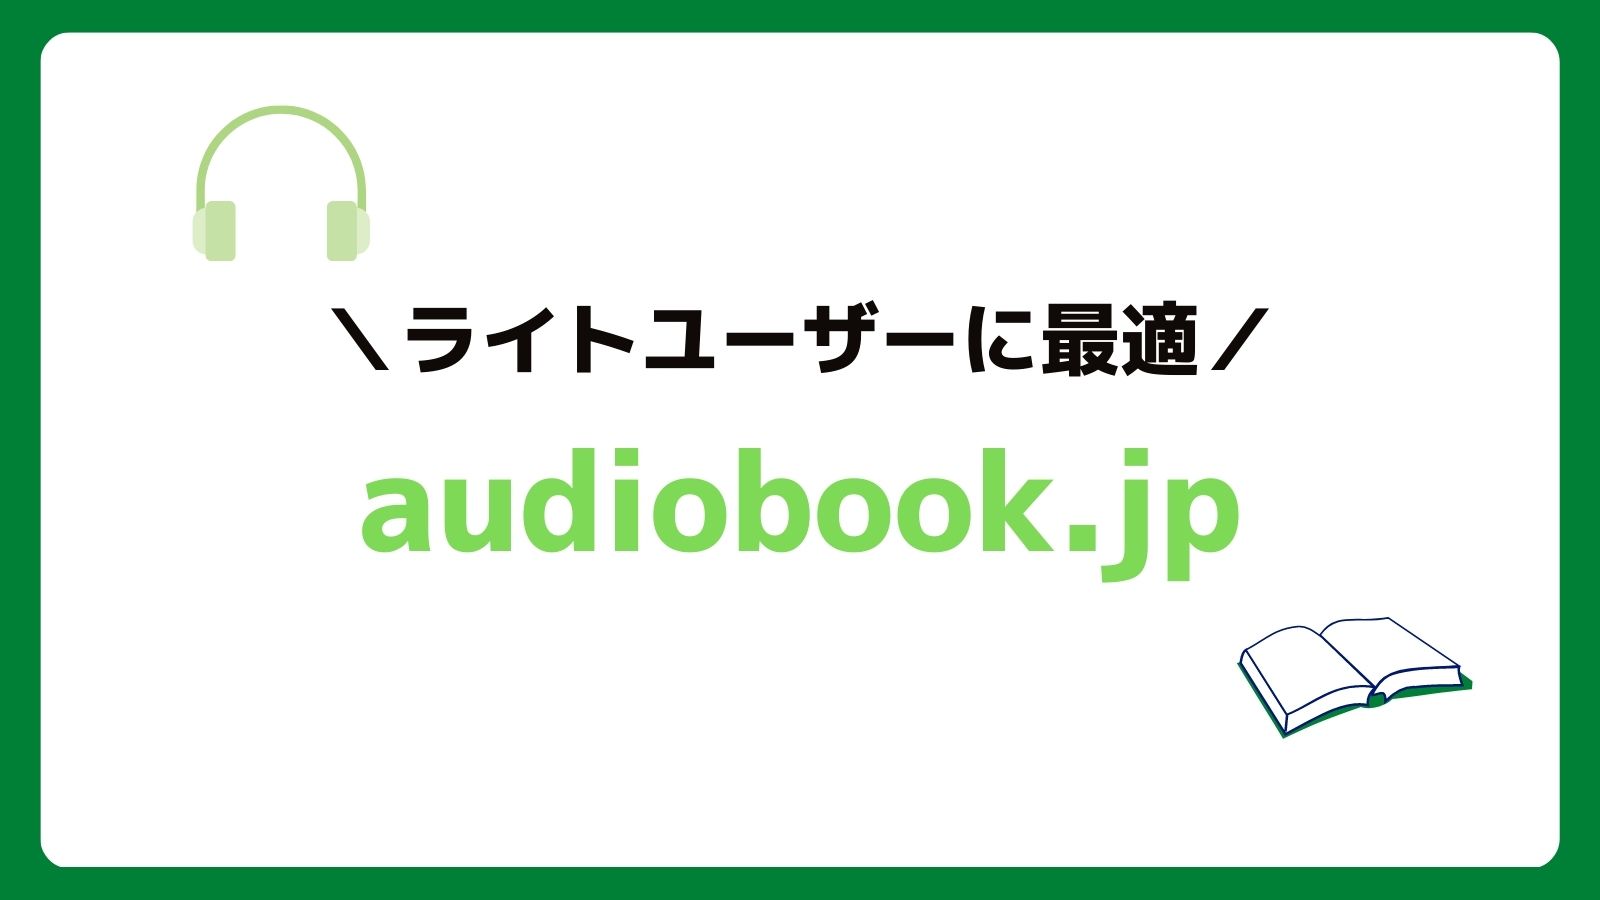 audiobook.jp（無料体験あり）はライトユーザー向けのおすすめオーディオブックサービス